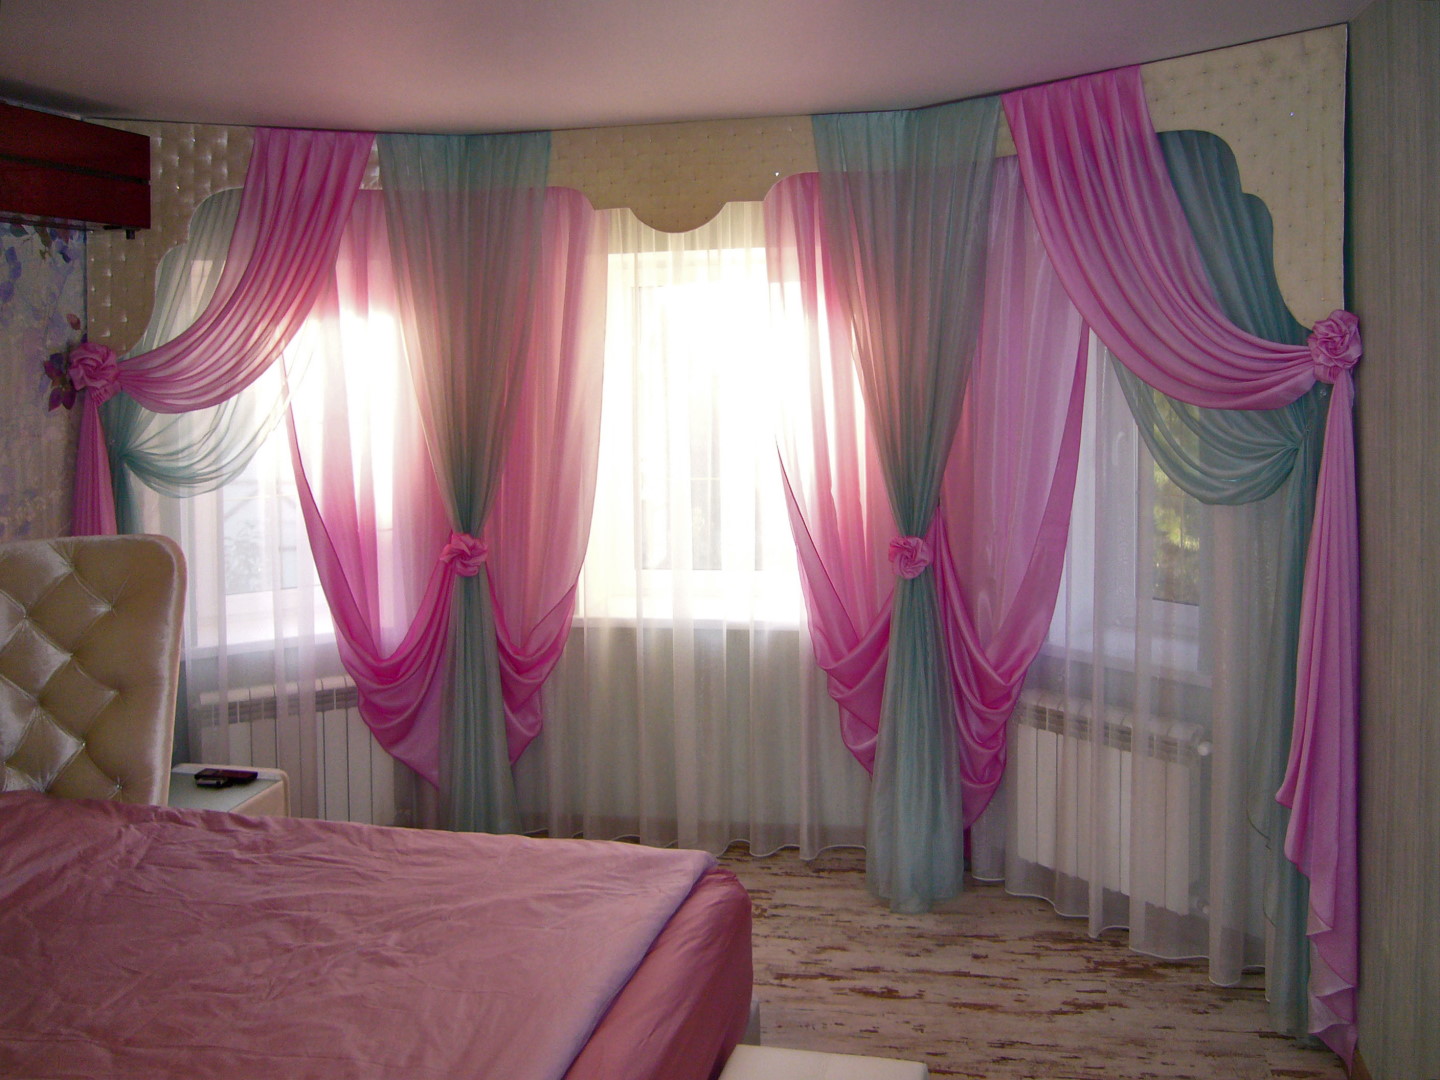 Шторы для спальни в романтическом стиле. Общий вид на три окна в эркере.